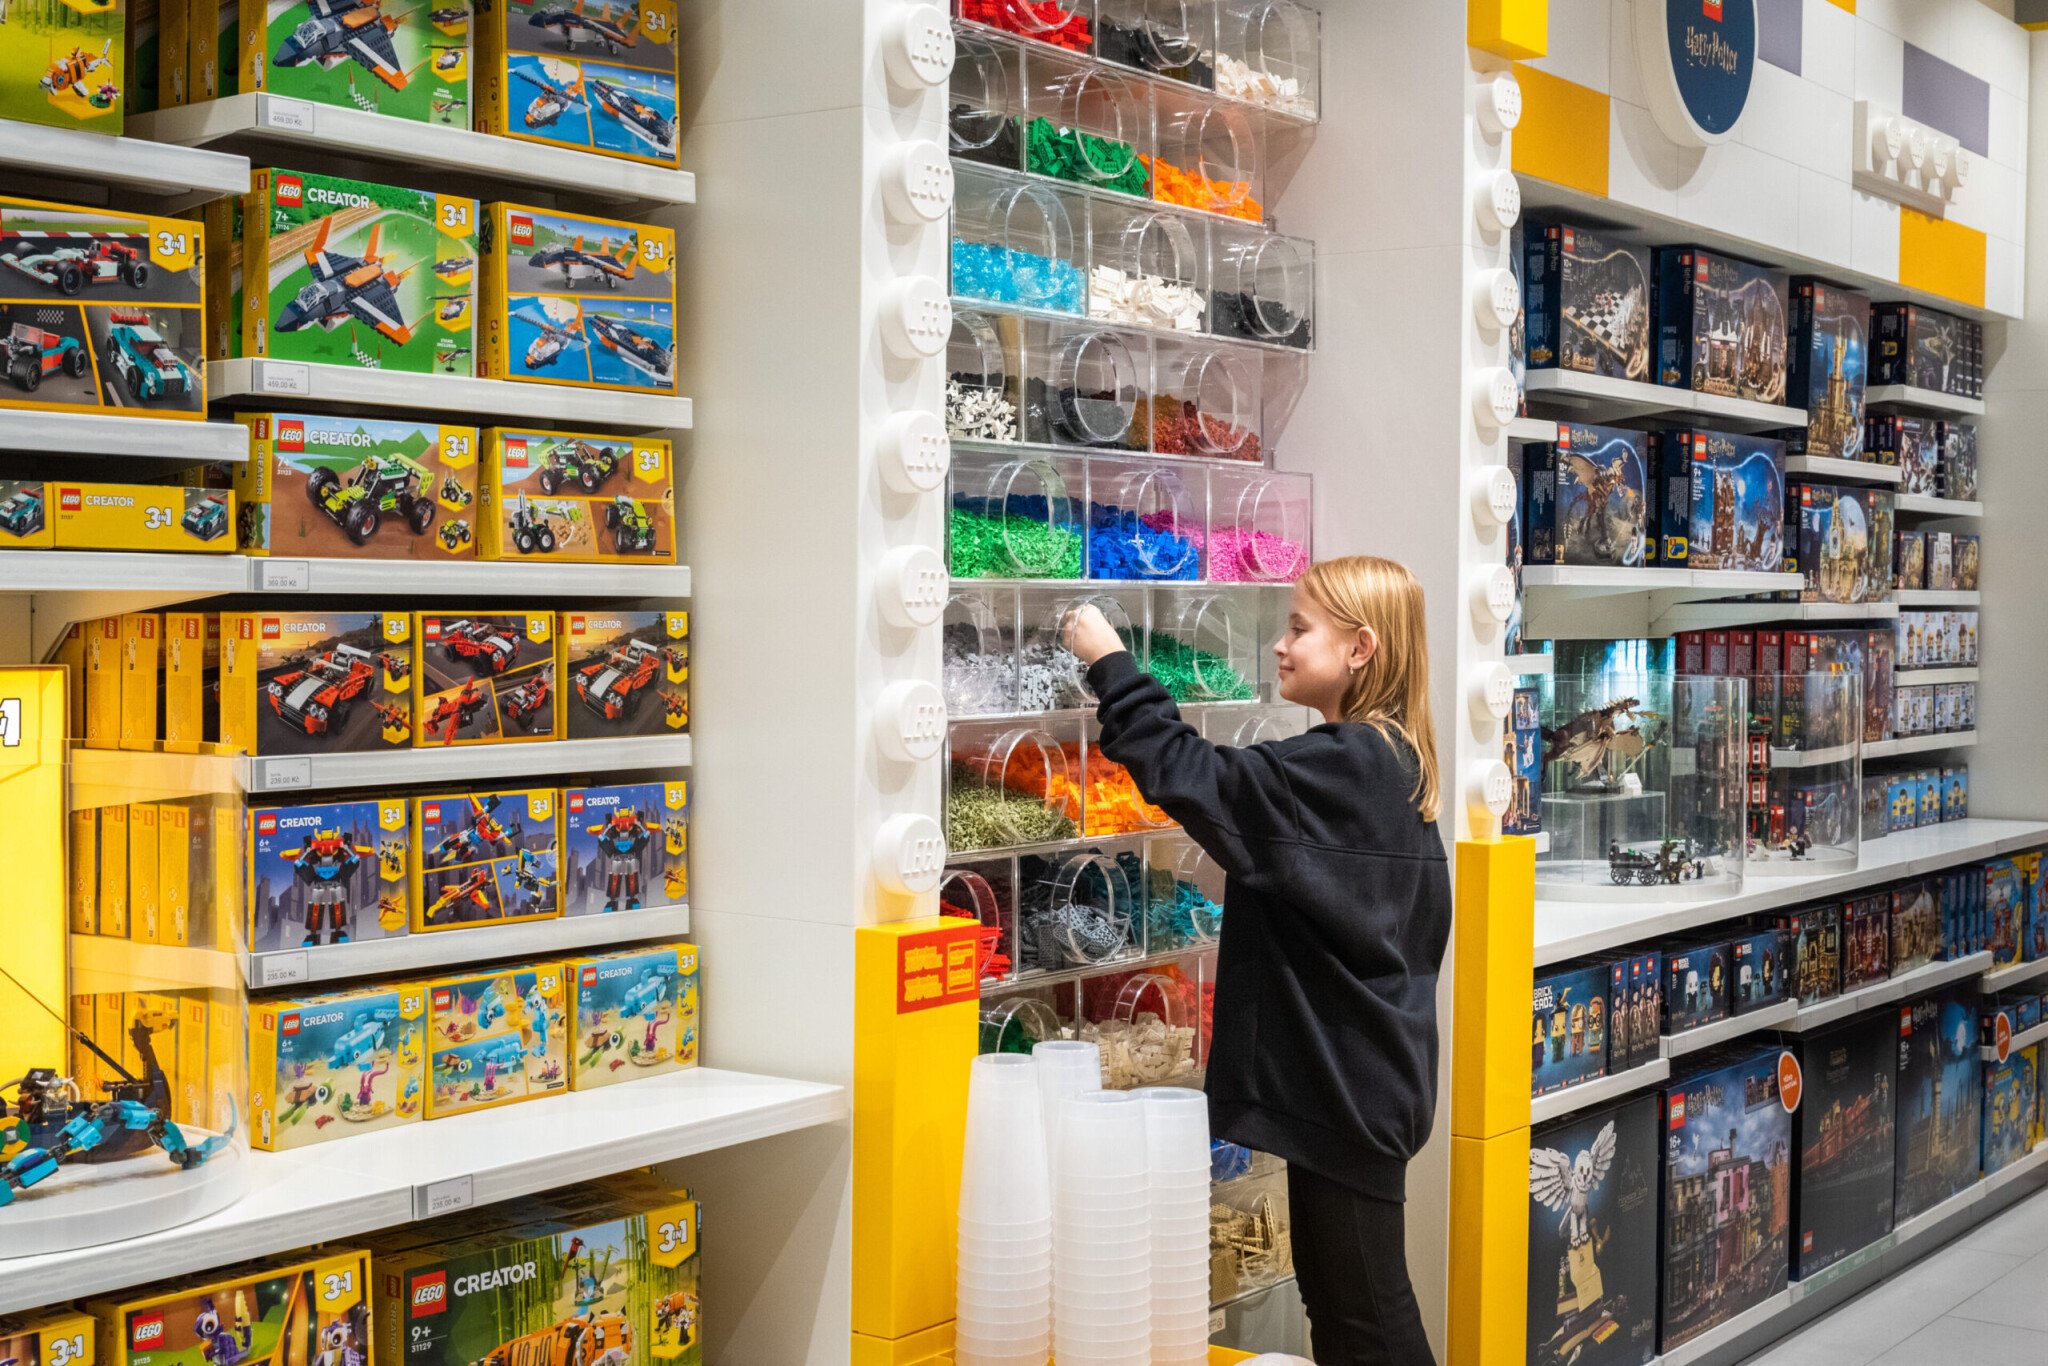 Lego otevřelo první značkovou prodejnu v Česku. Můžete si v ní vytvořit vlastní figurku